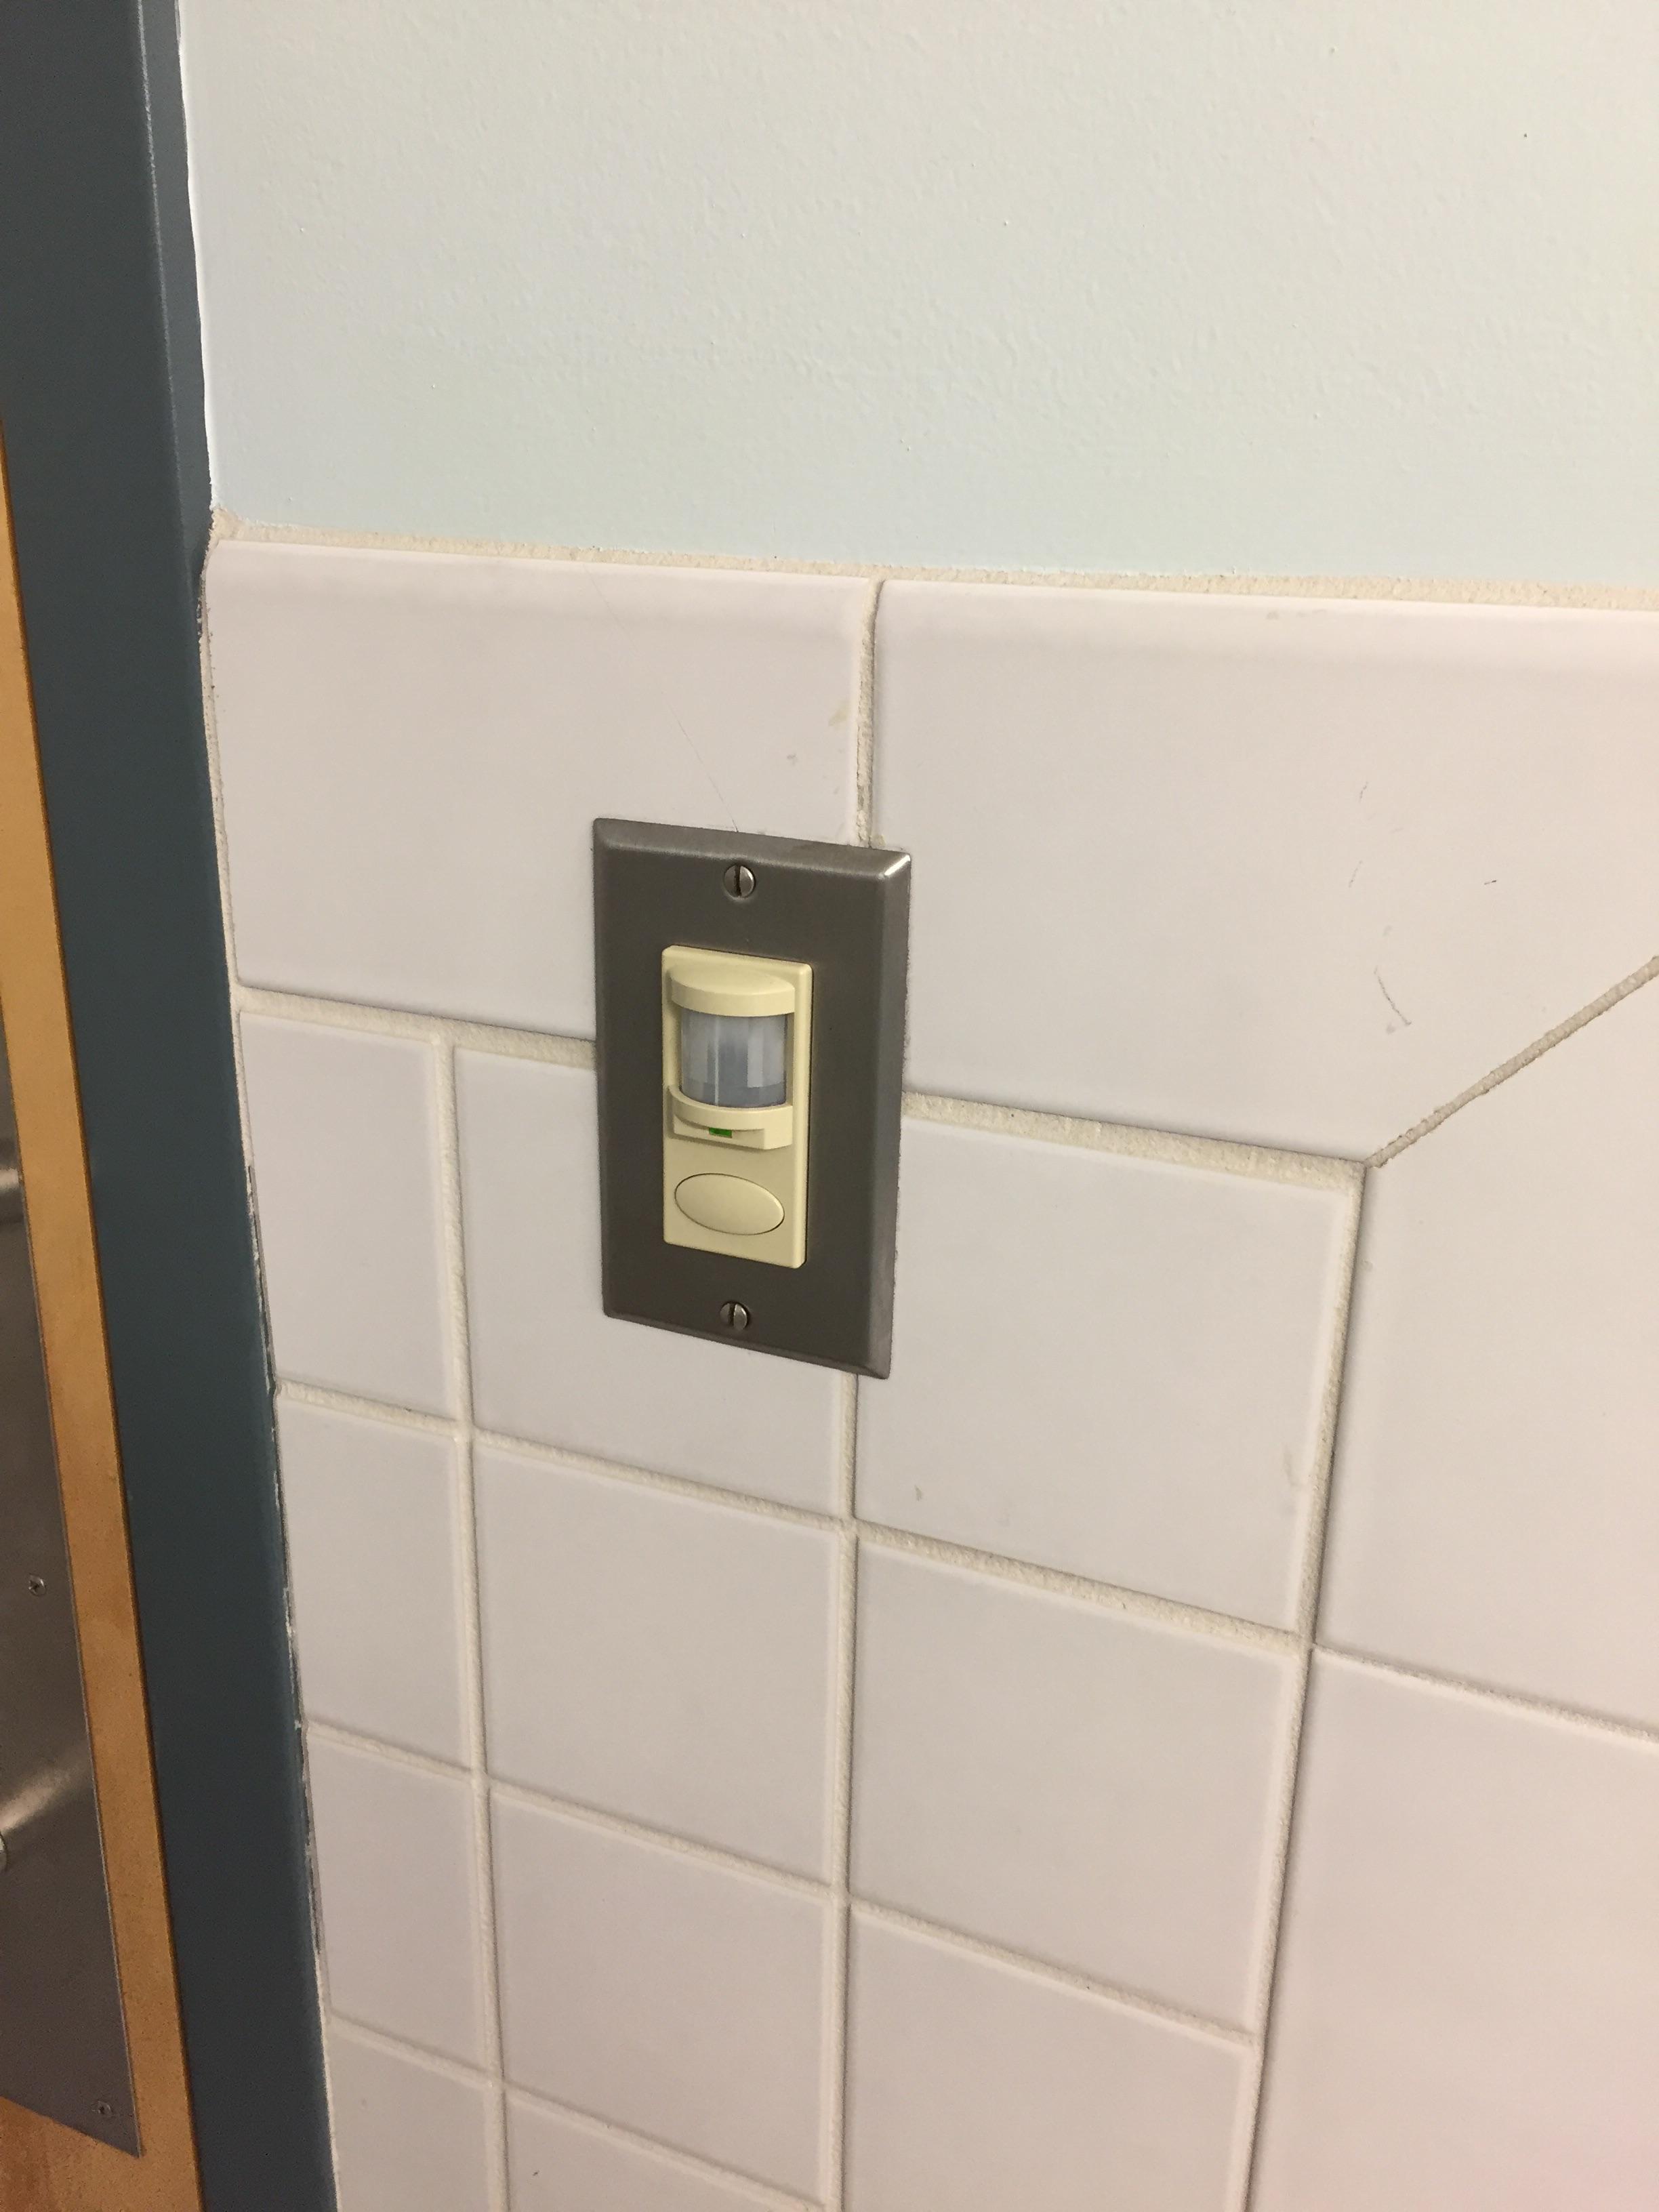 Bathroom Door Sensor